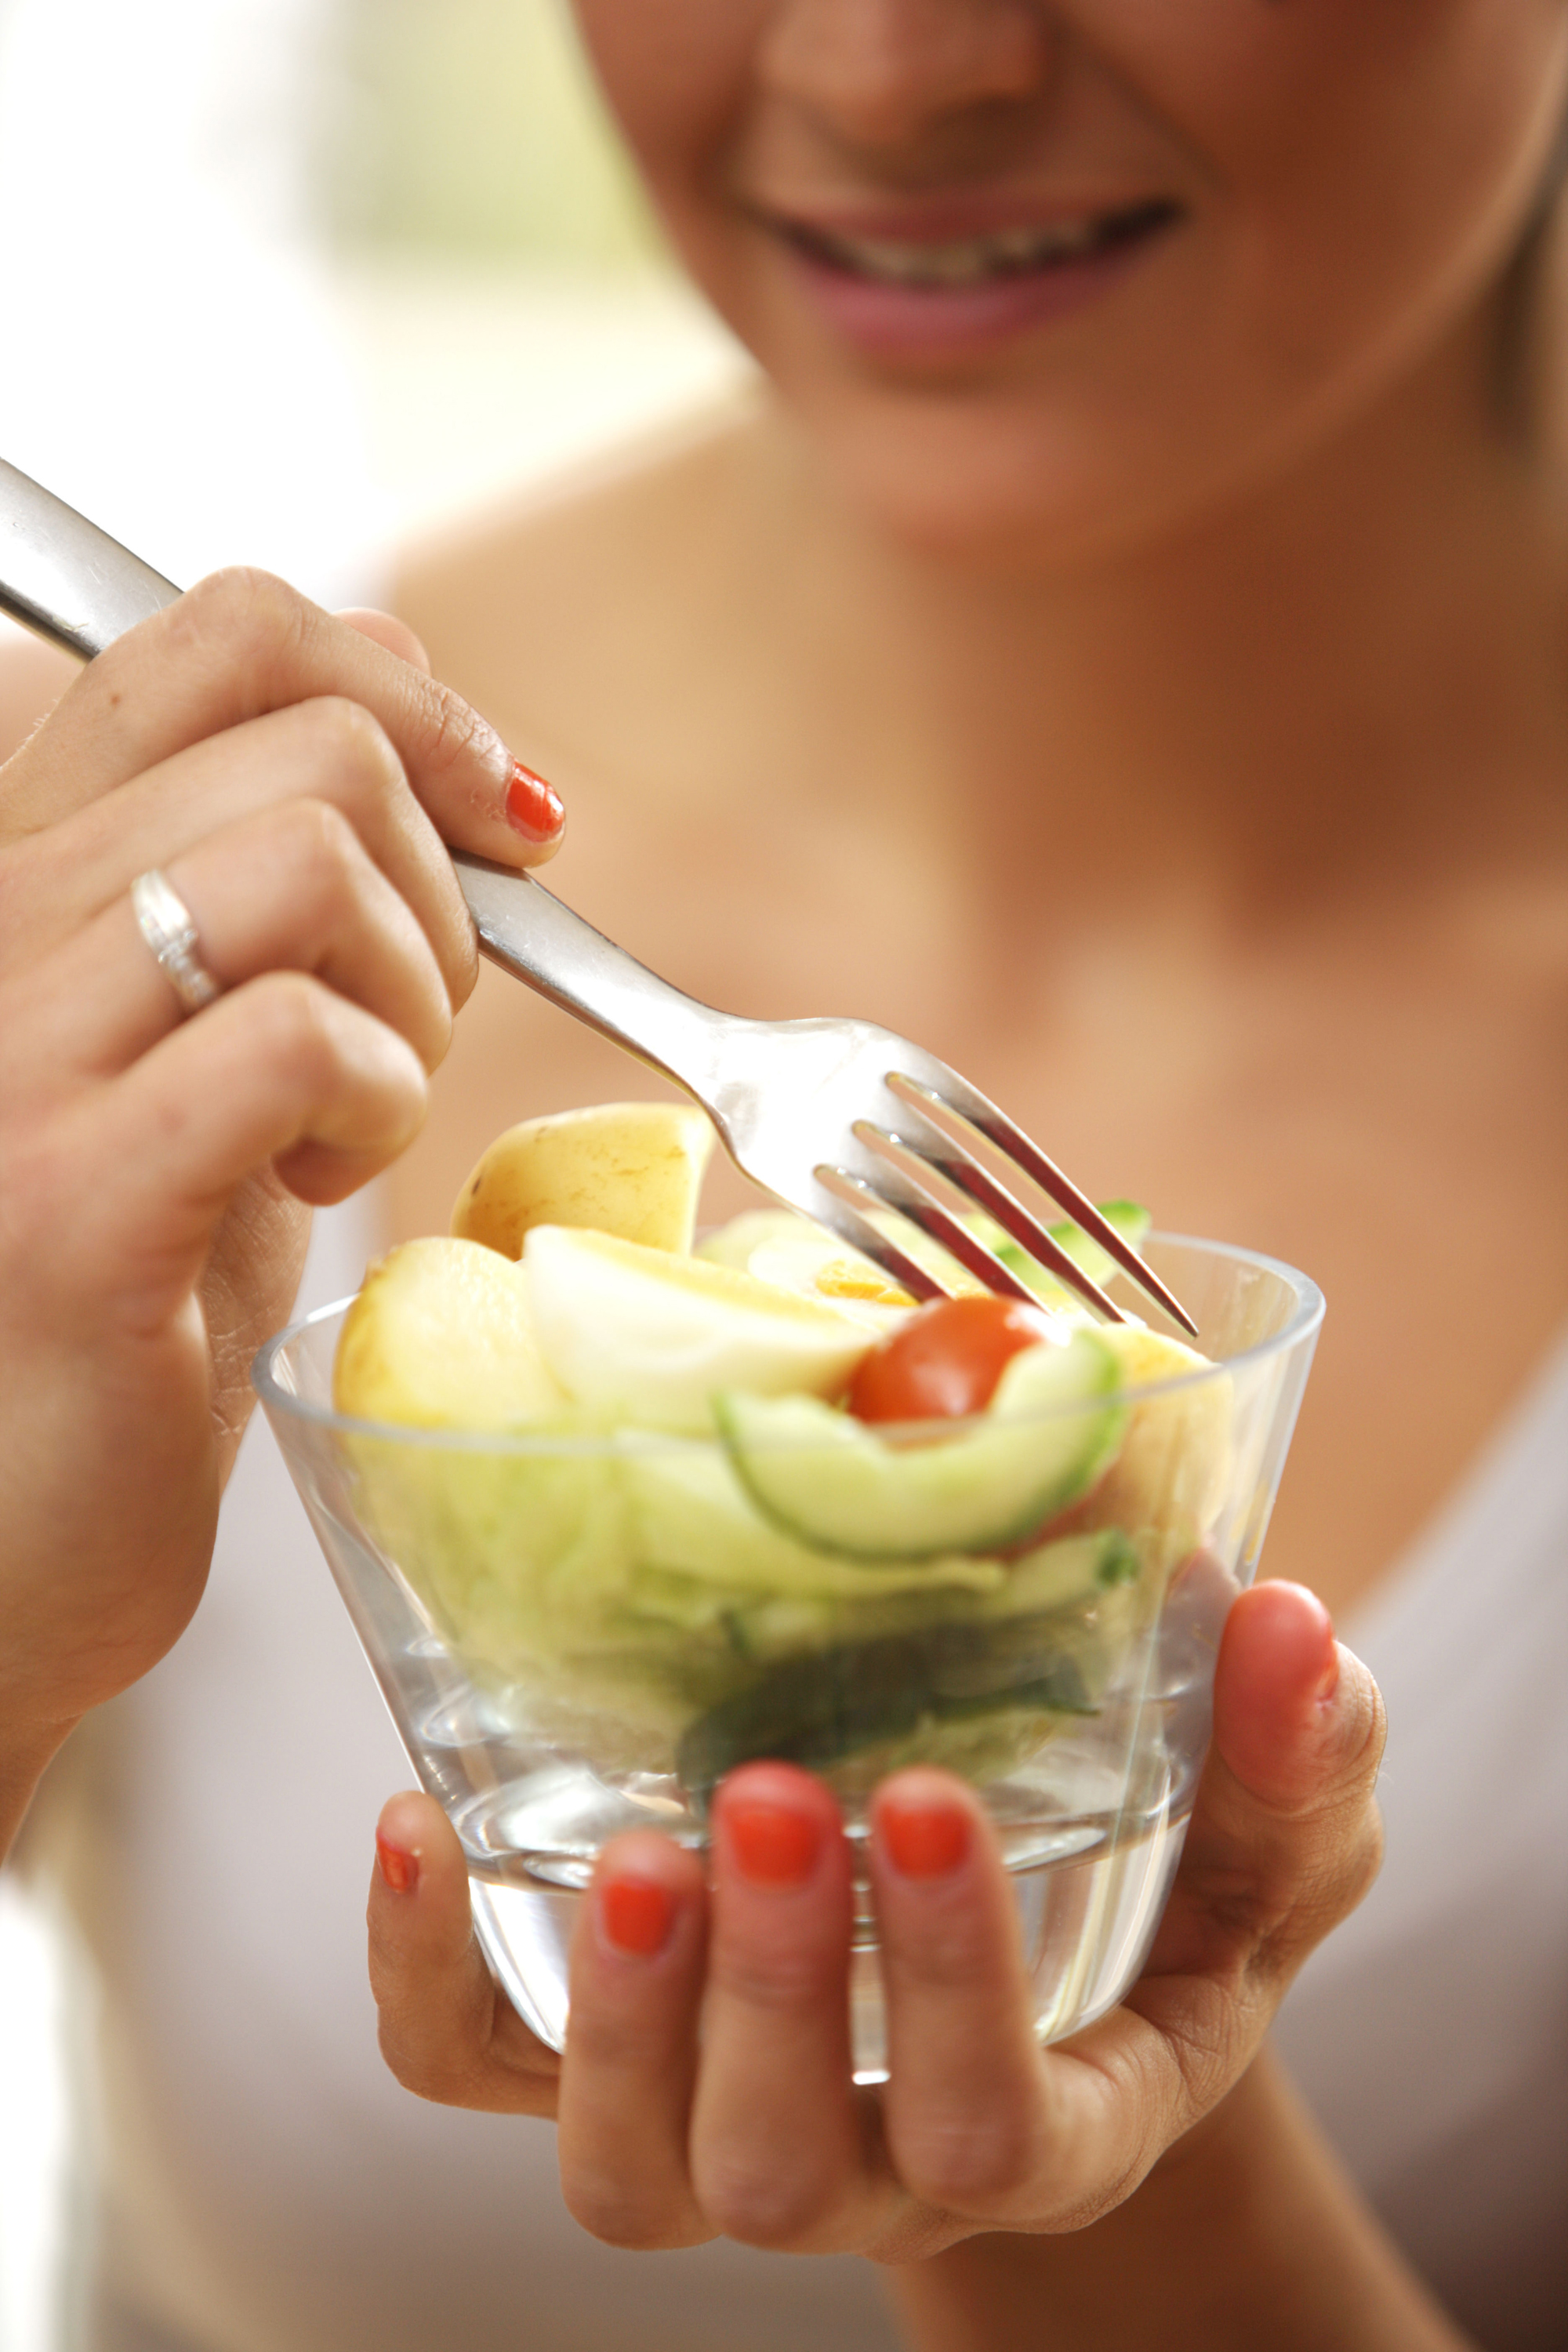 woman eating potato salad